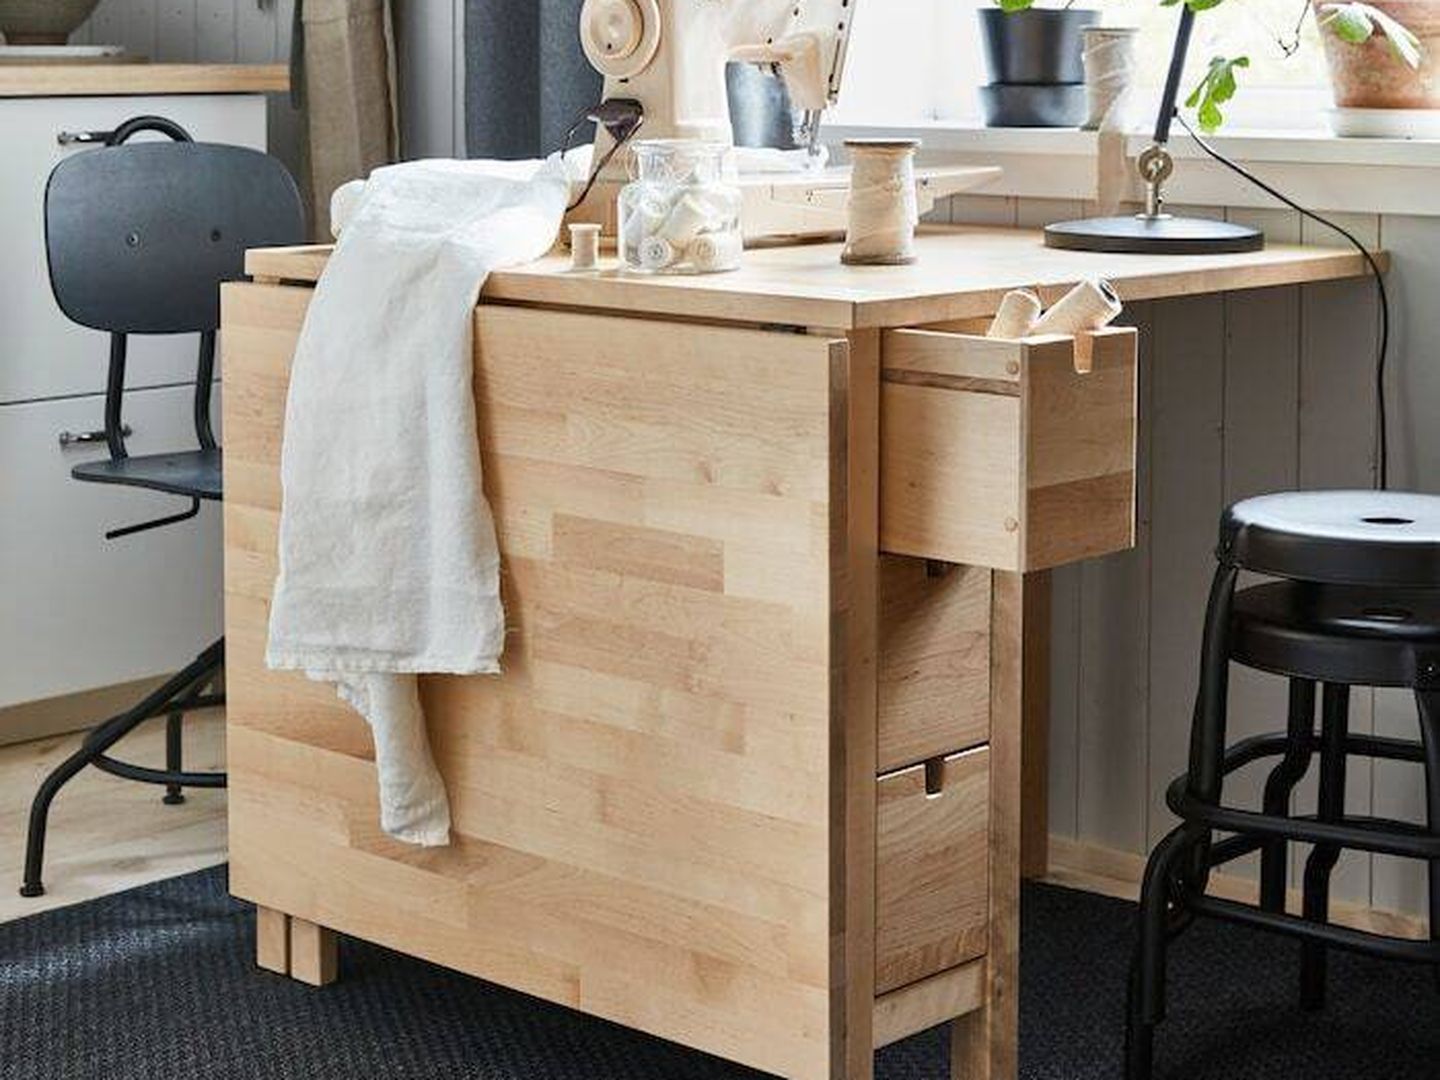  Muebles de Ikea para espacios pequeños. (Cortesía)